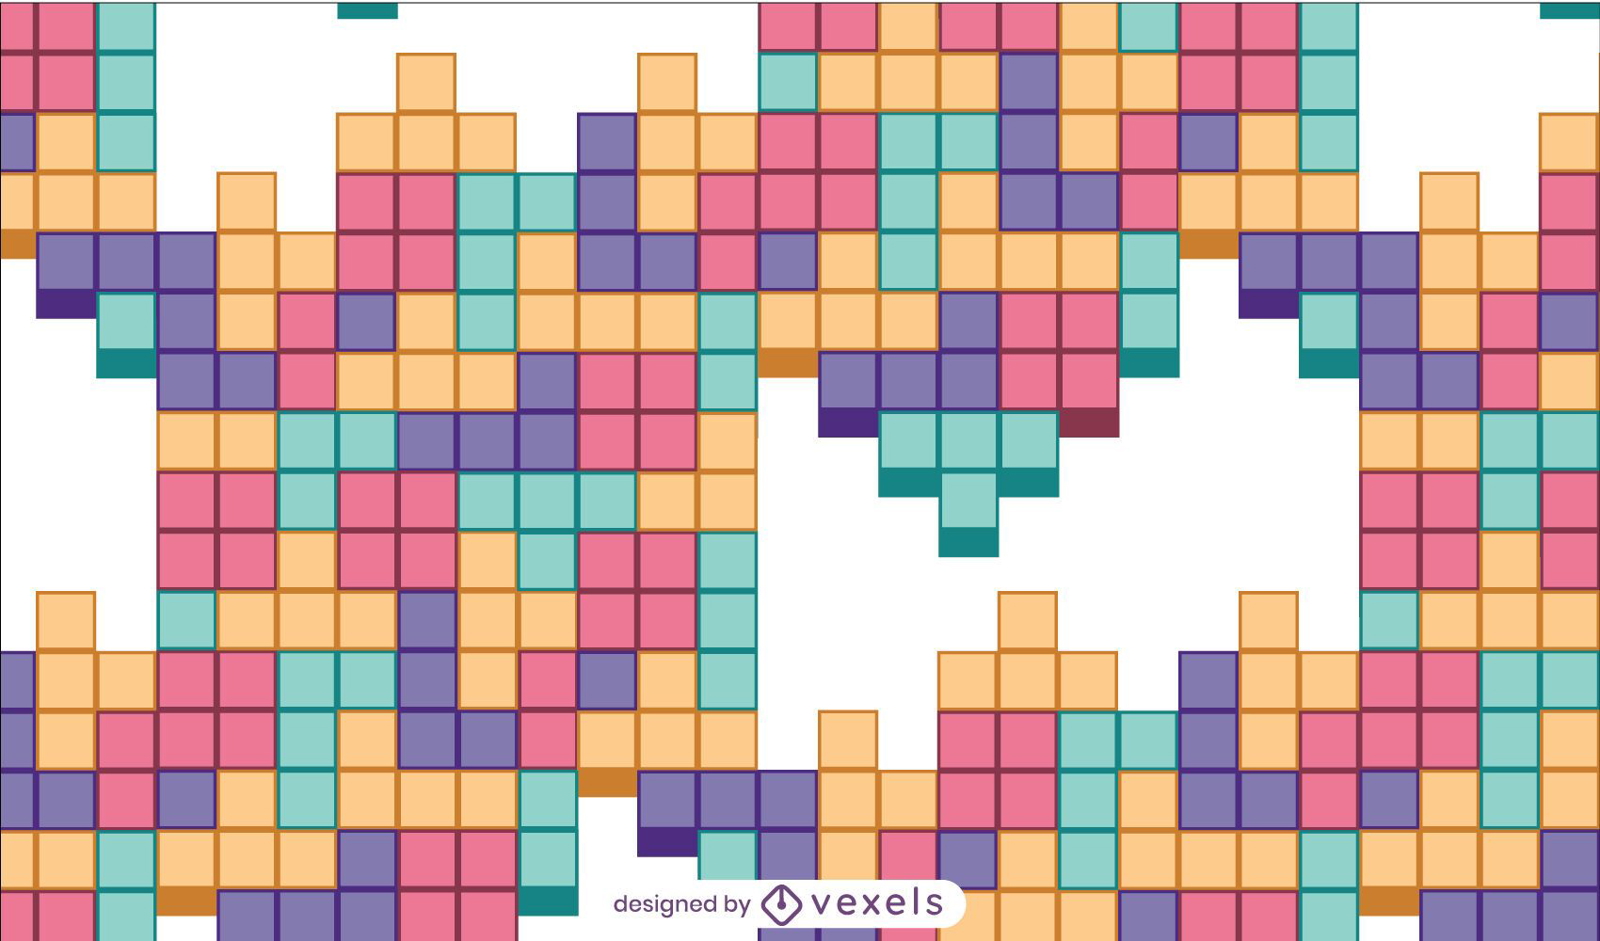 Tile matching game pattern design